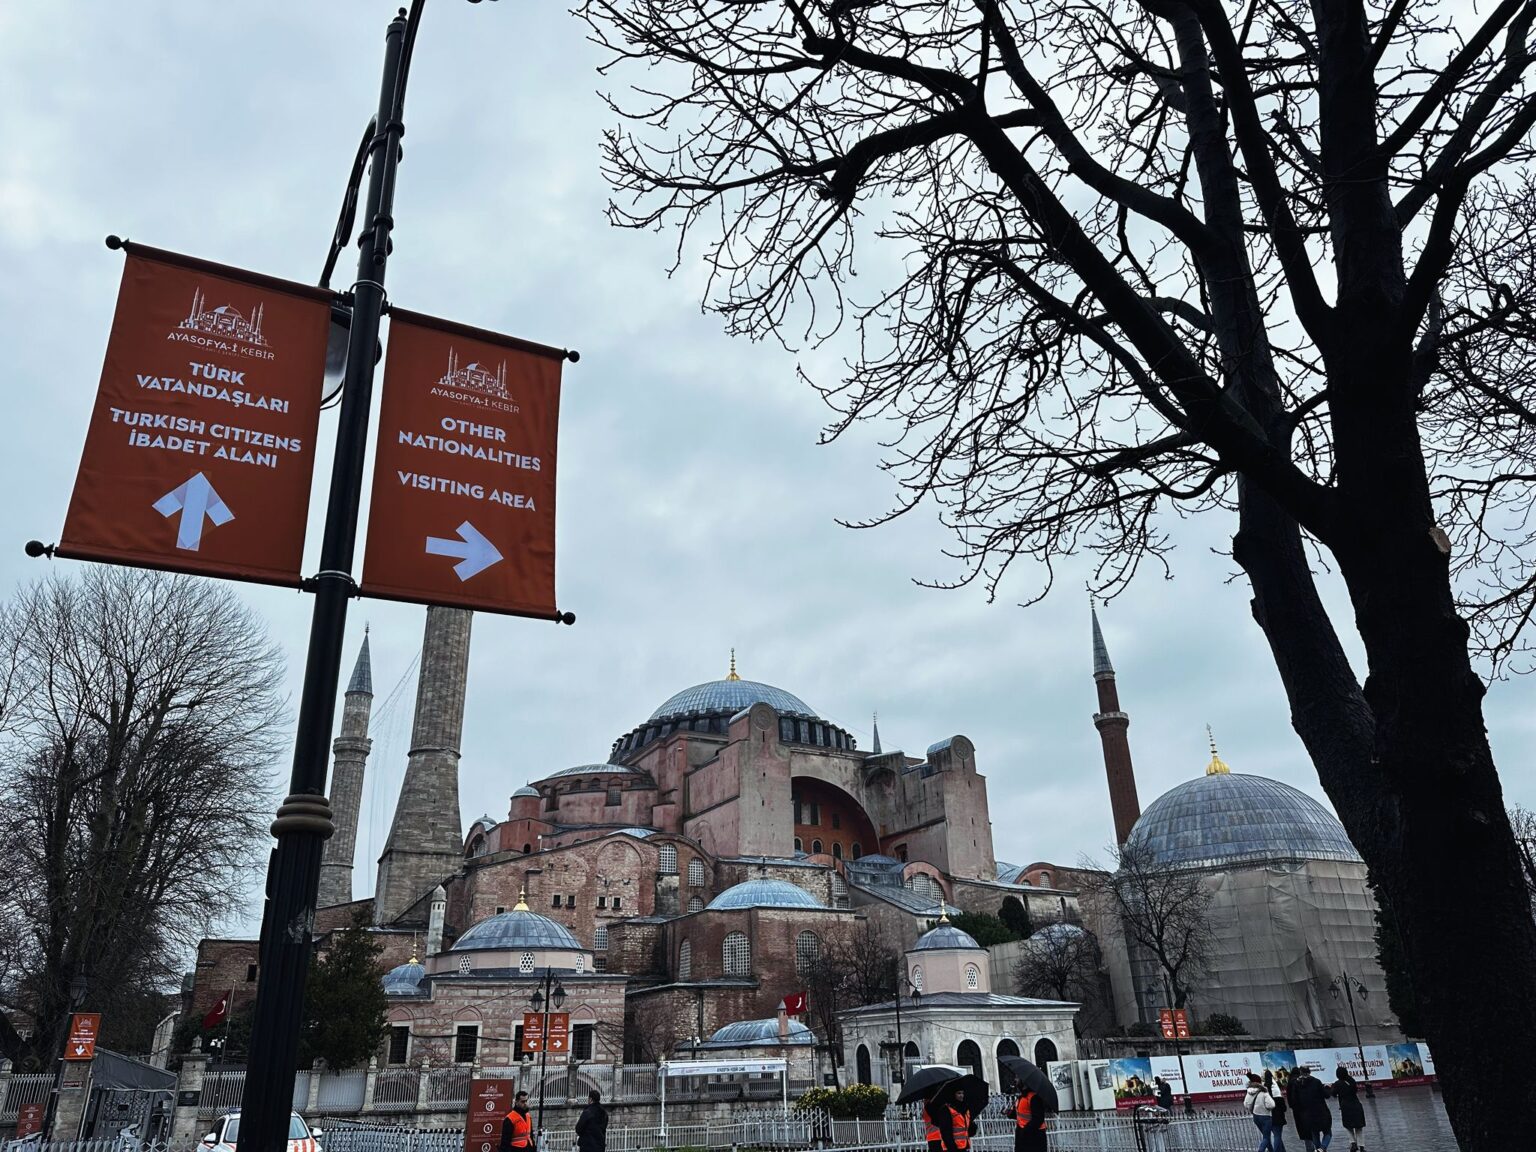 Ayasofya Mosque // Hagia Sophia Mosque